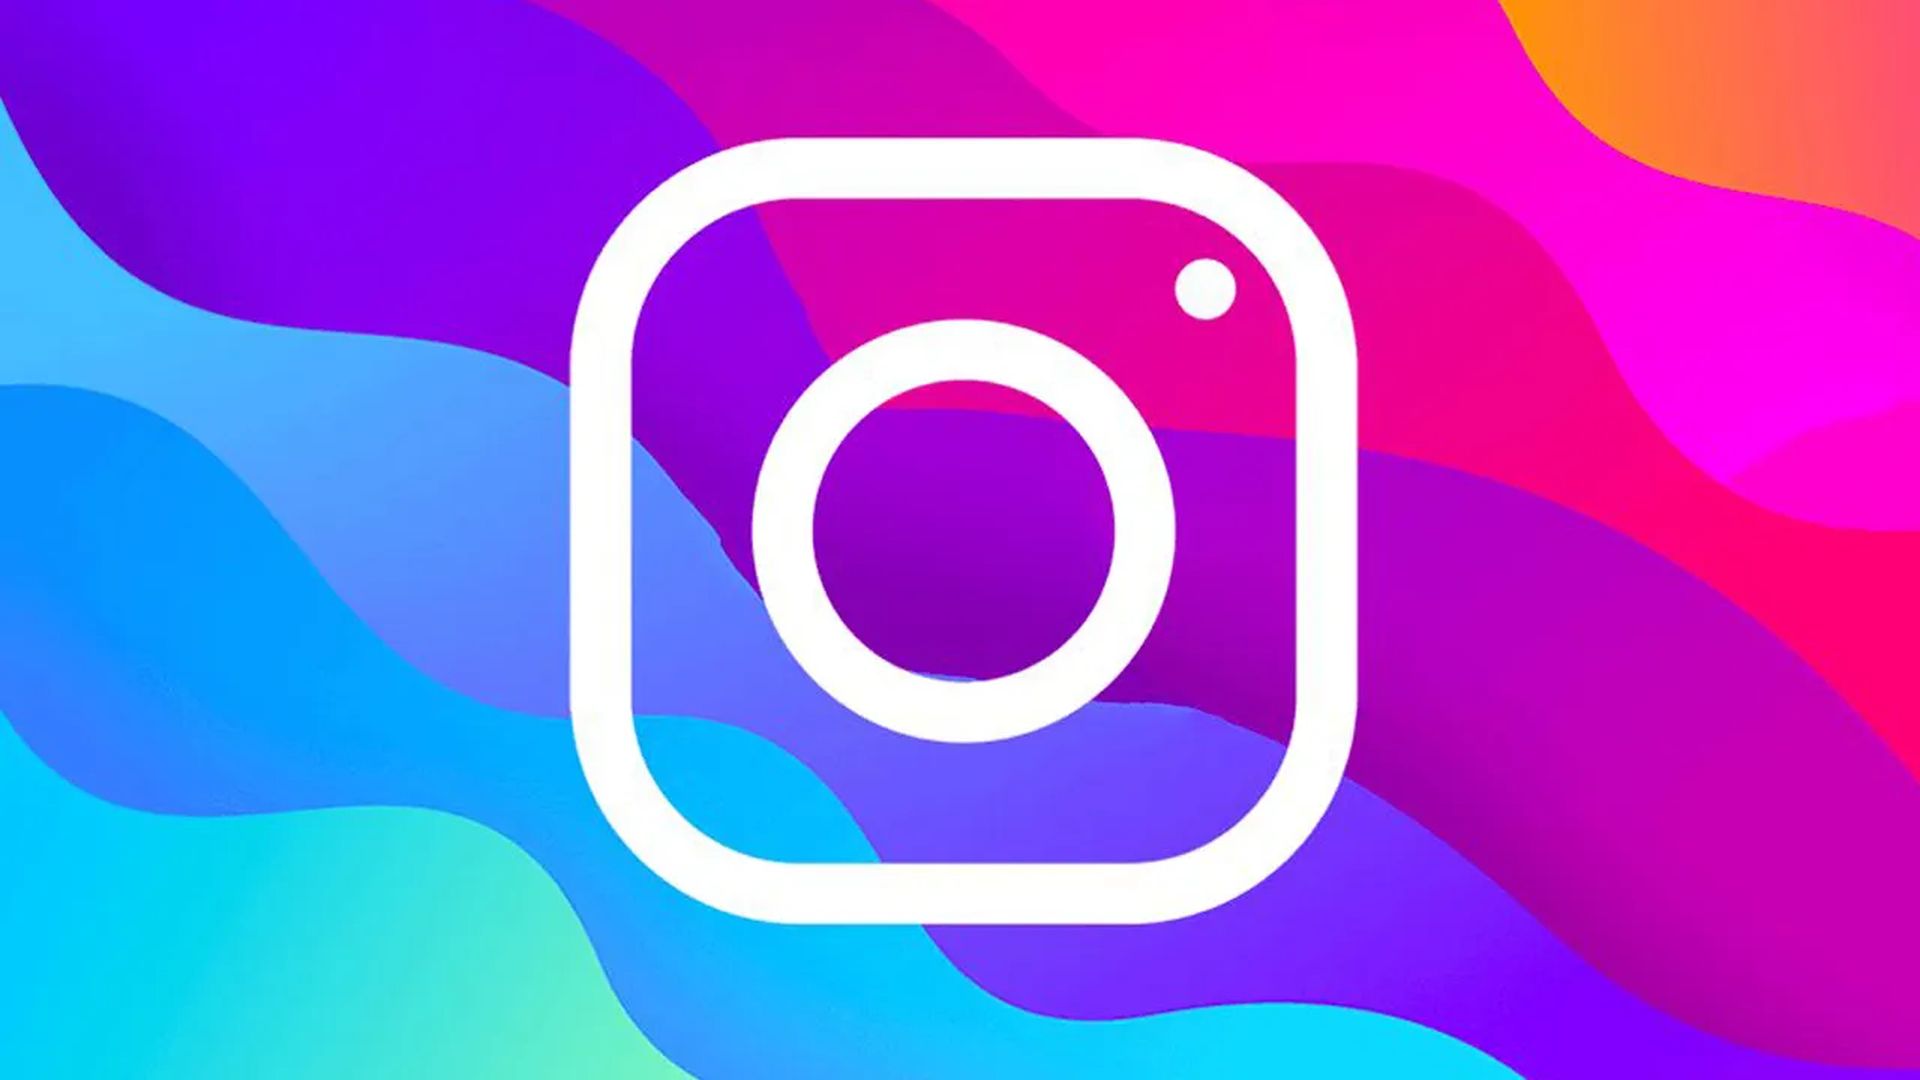 В этой статье мы рассмотрим, как публиковать GIF в Instagram, чтобы вы могли делиться своими любимыми GIF-файлами со своими подписчиками.